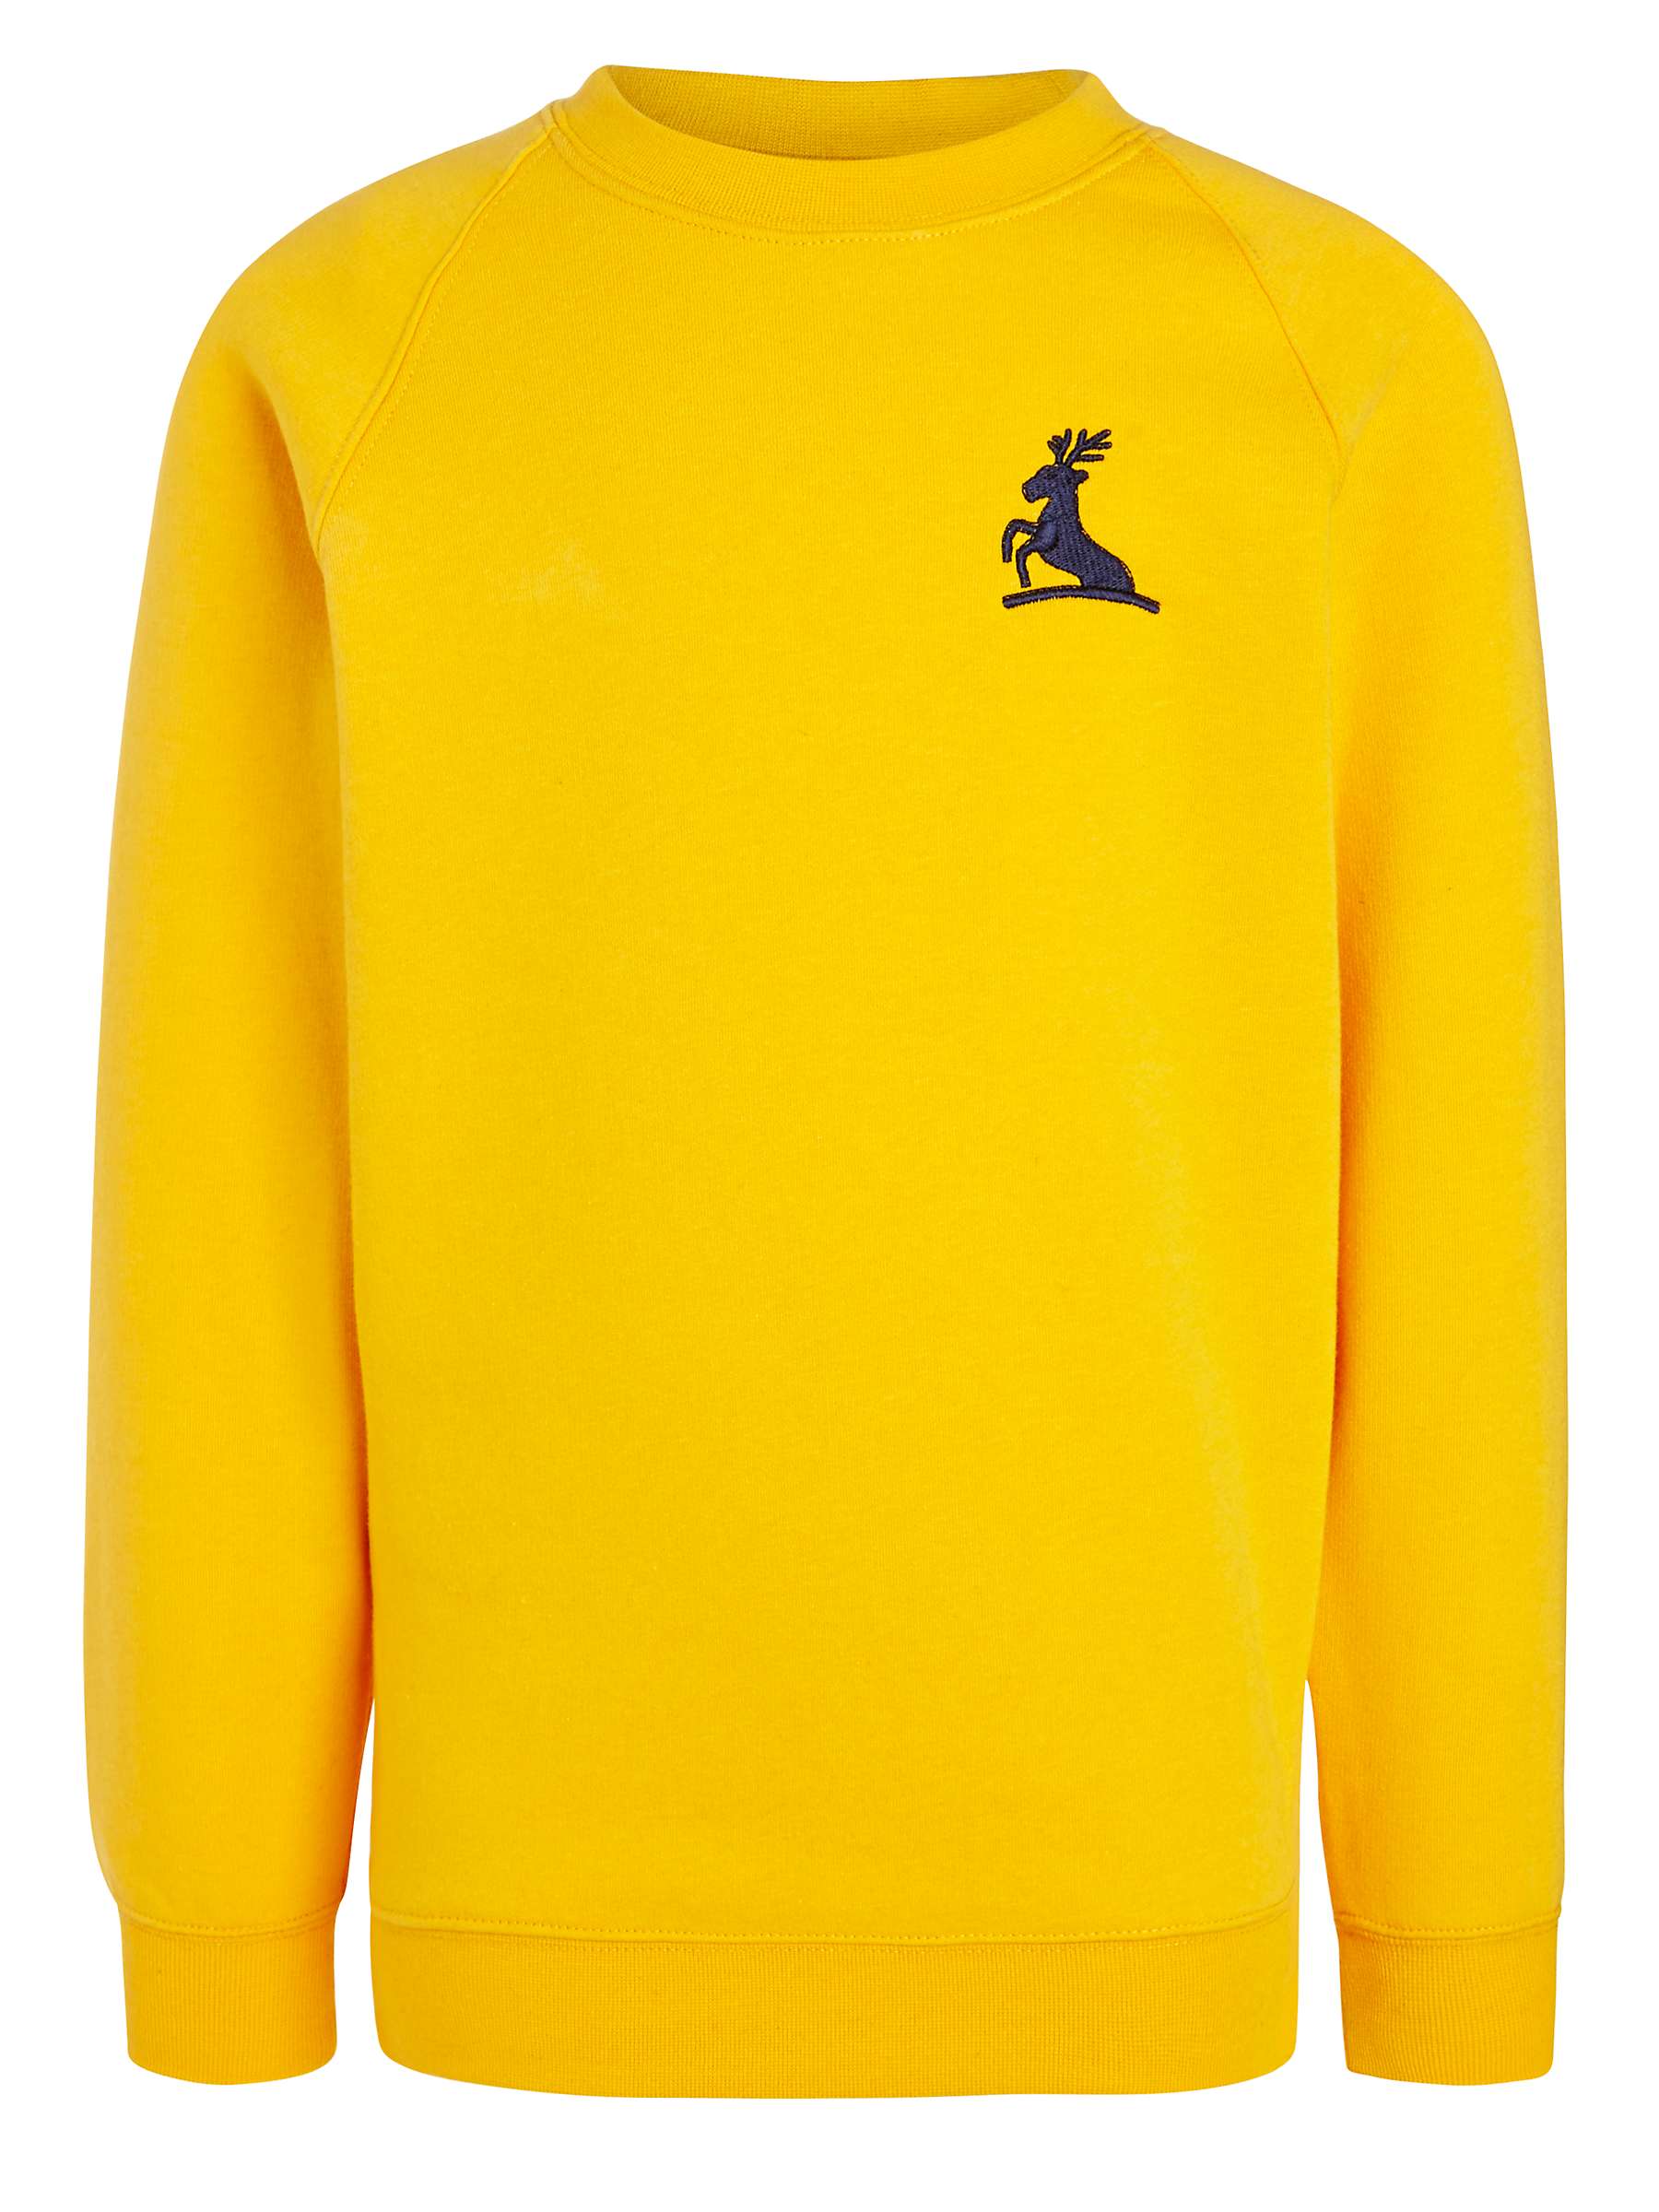 Buy Colfe's School Unisex Sweatshirt Online at johnlewis.com